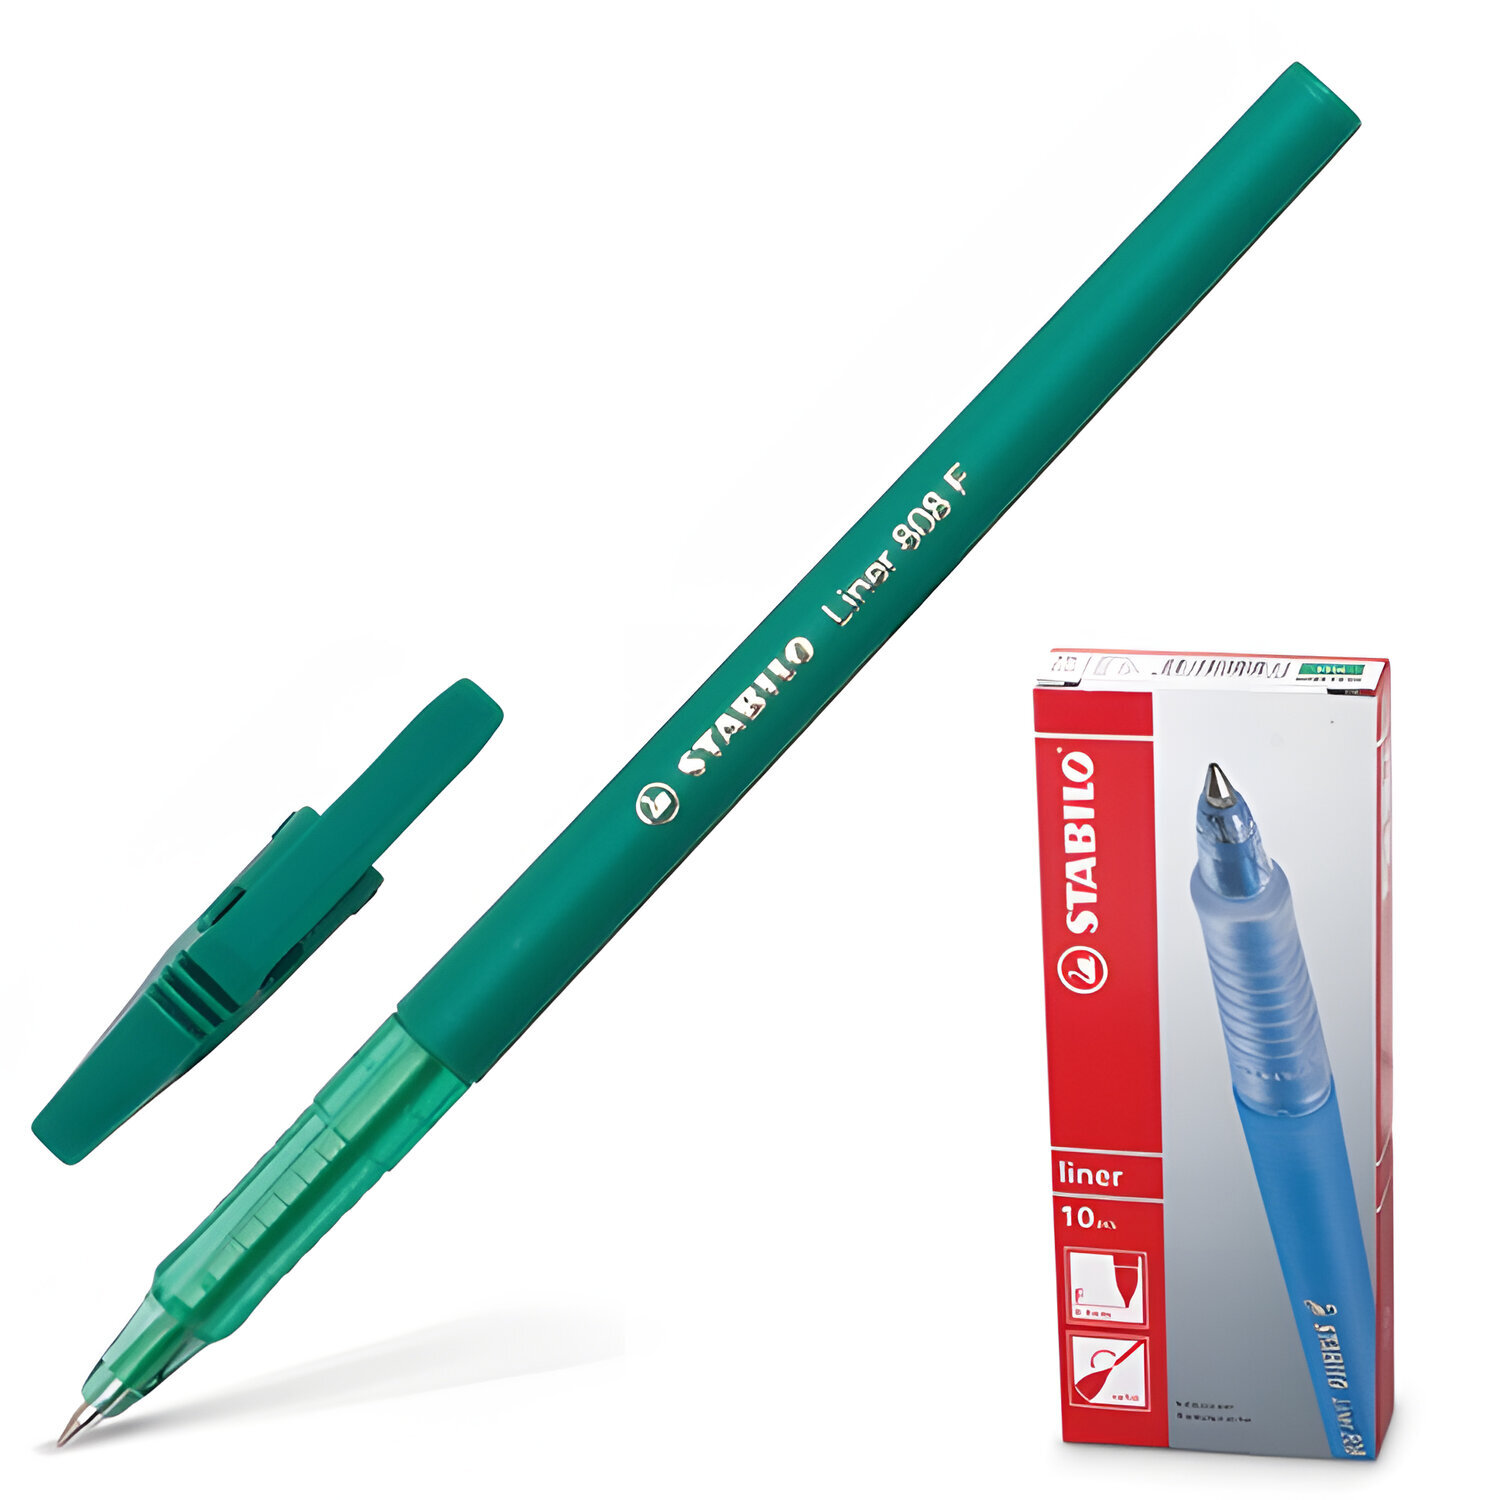 Ручка канц. шариковая 0,3mm STABILO "Liner" корпус зеленый Зеленая 141565